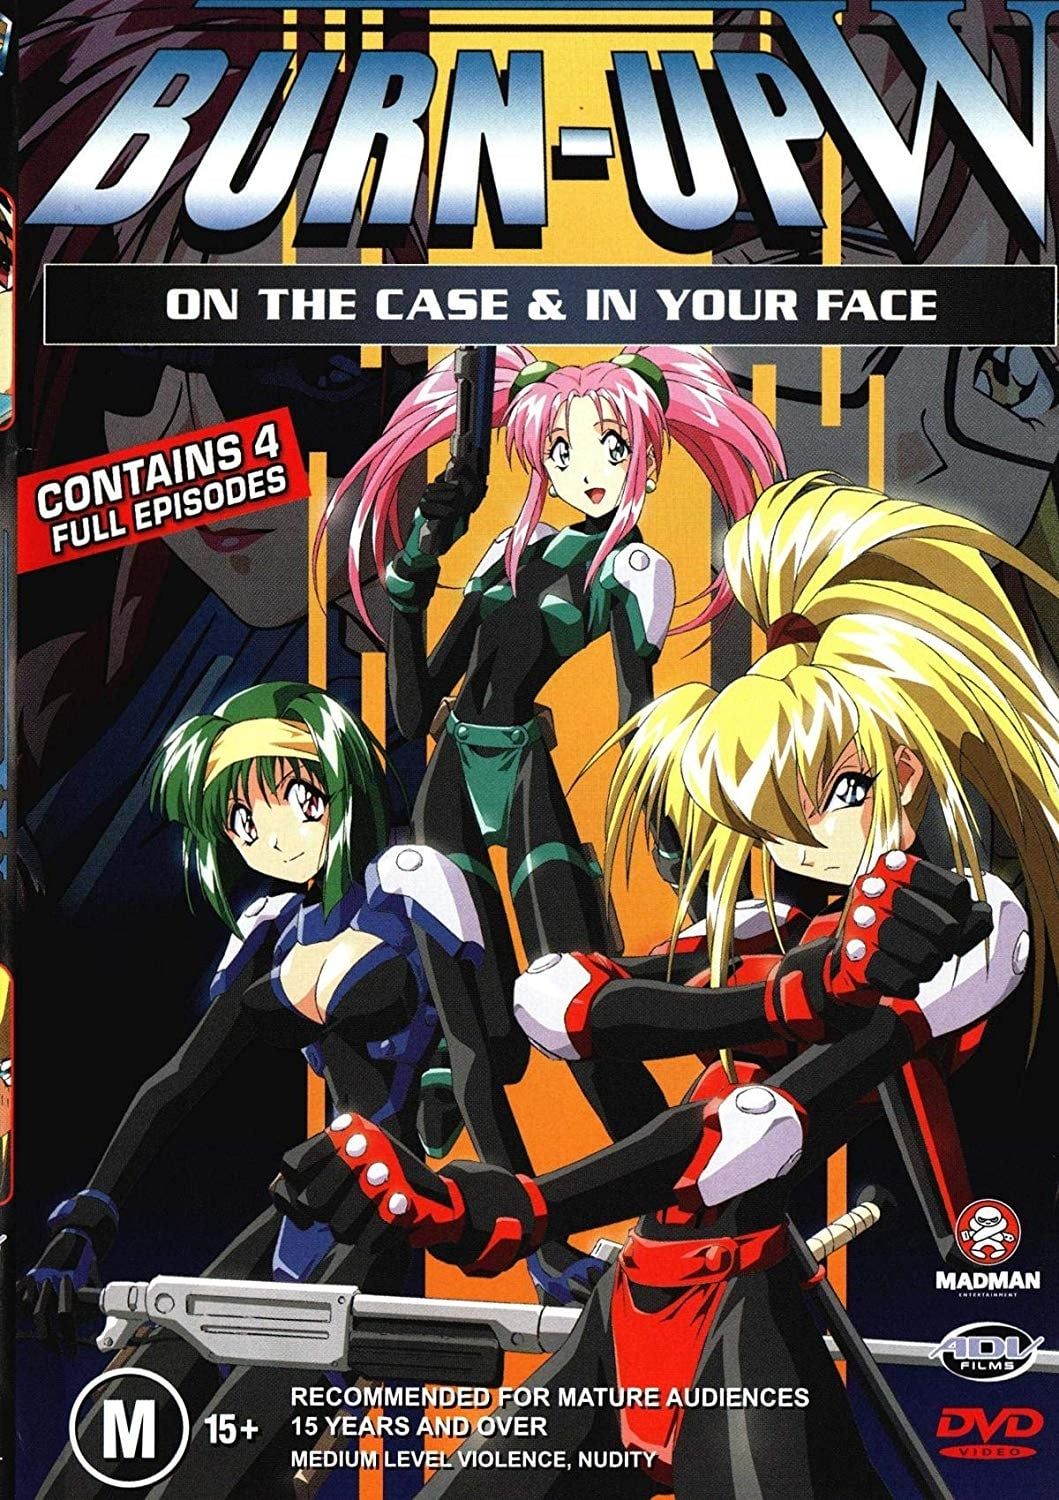 Dvd Anime El Hazard Dublado Completo